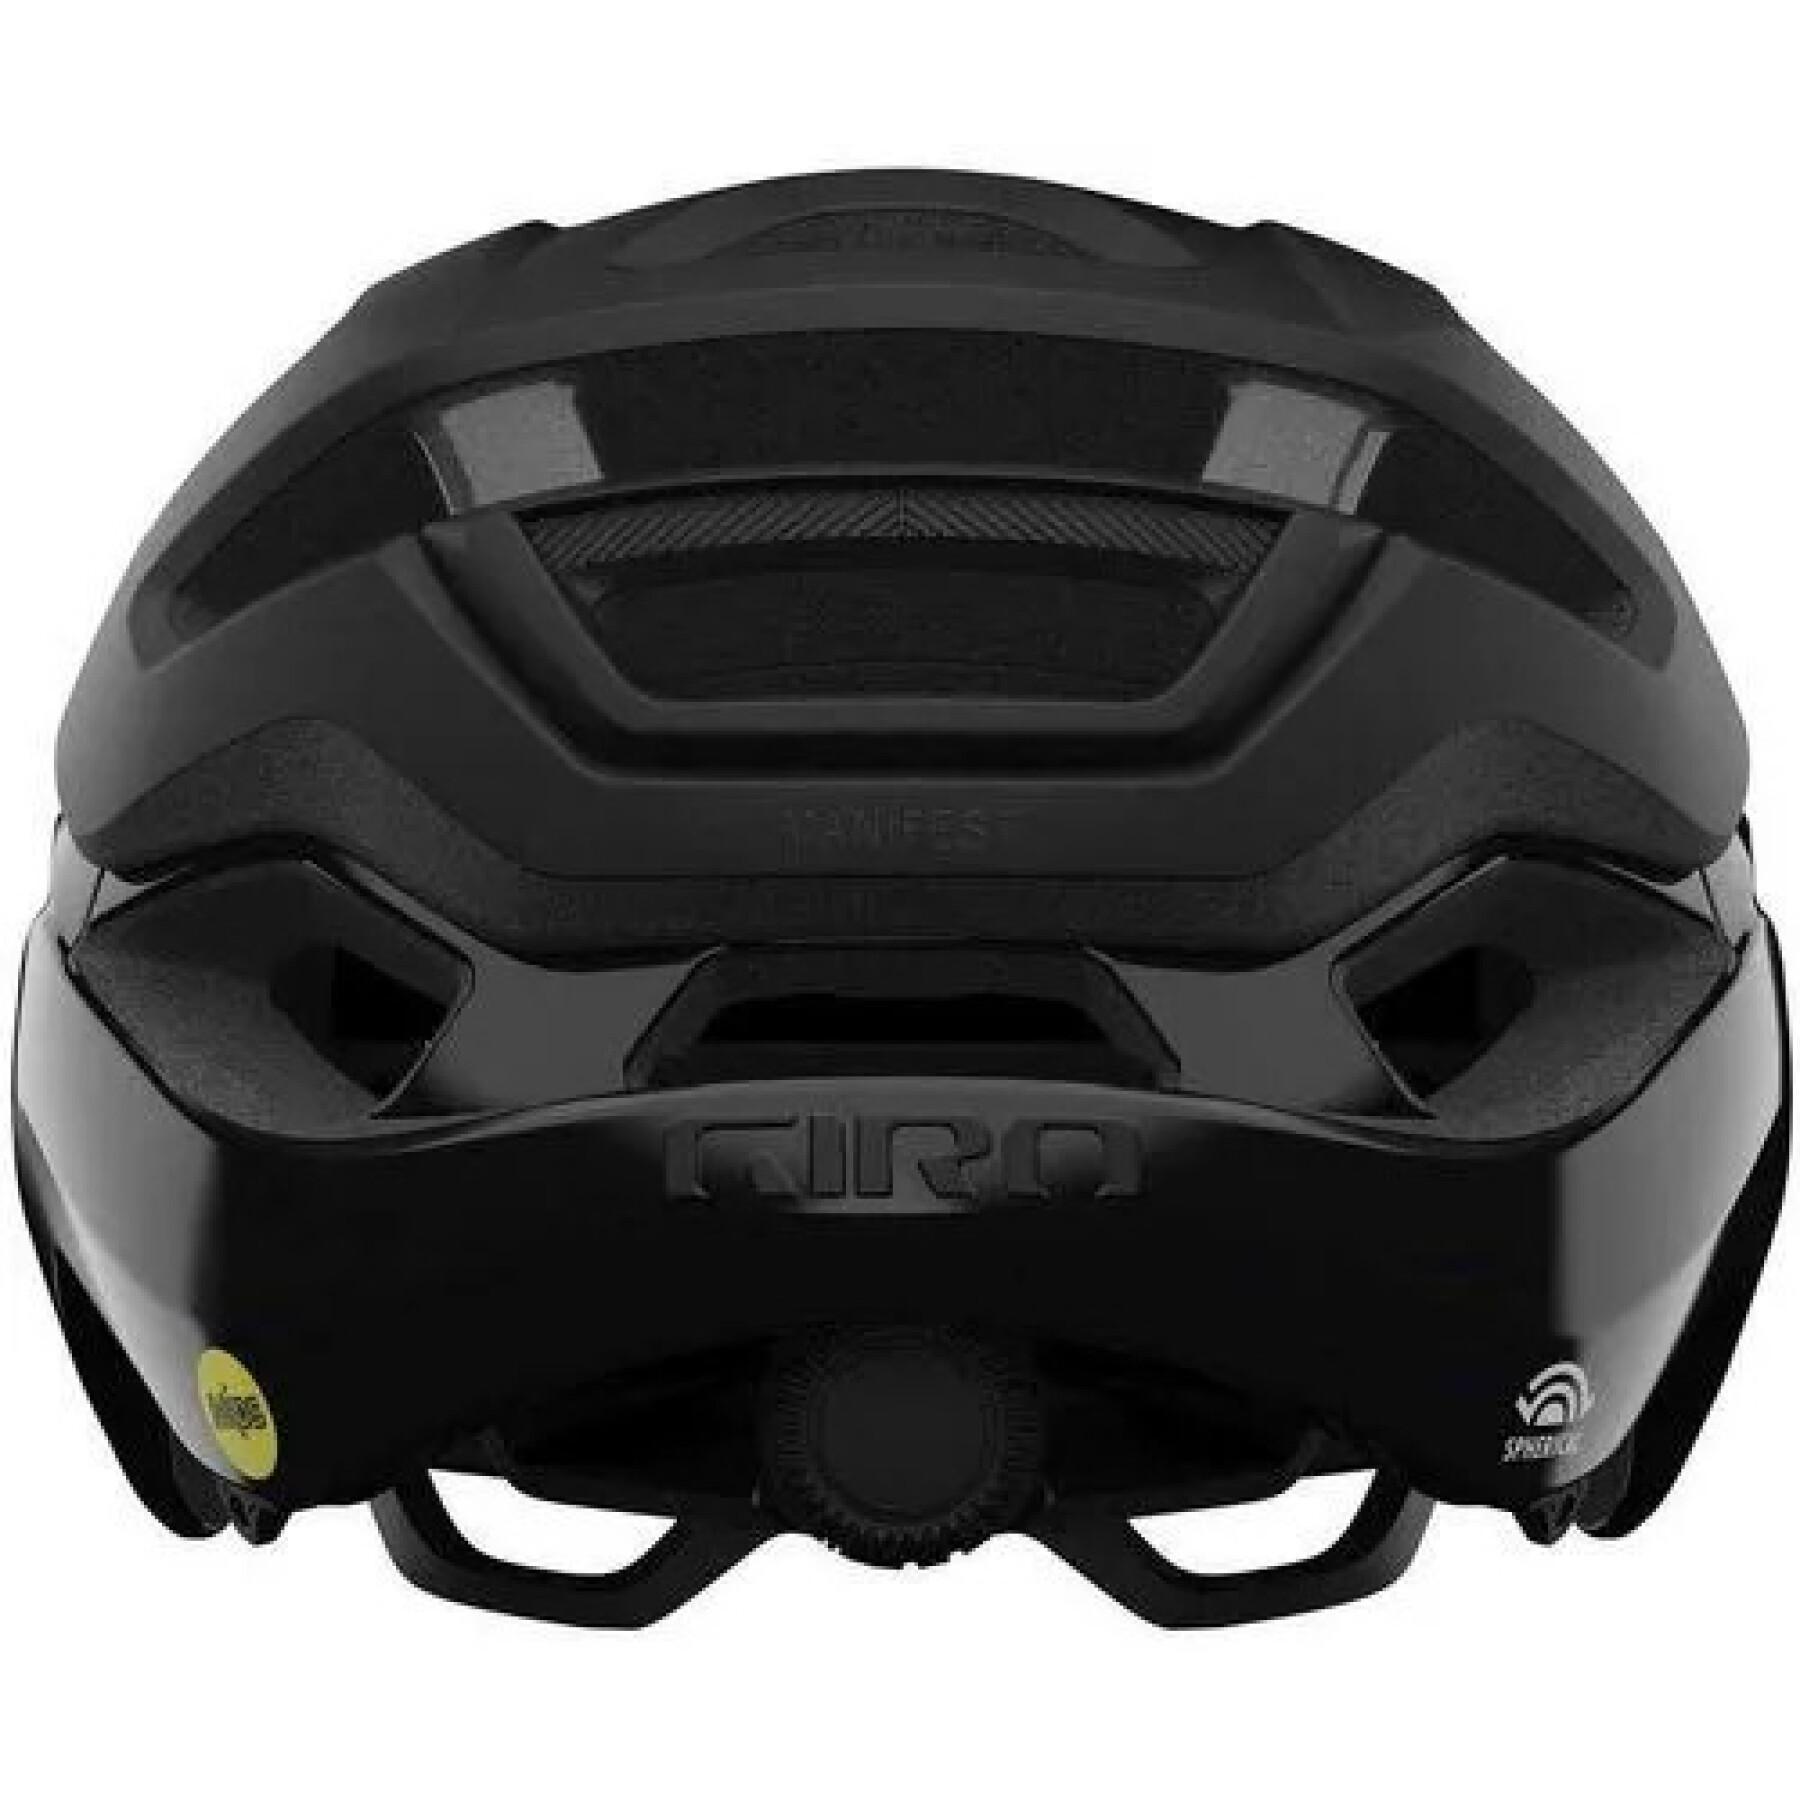 Bike helmet Giro Manifest spherical